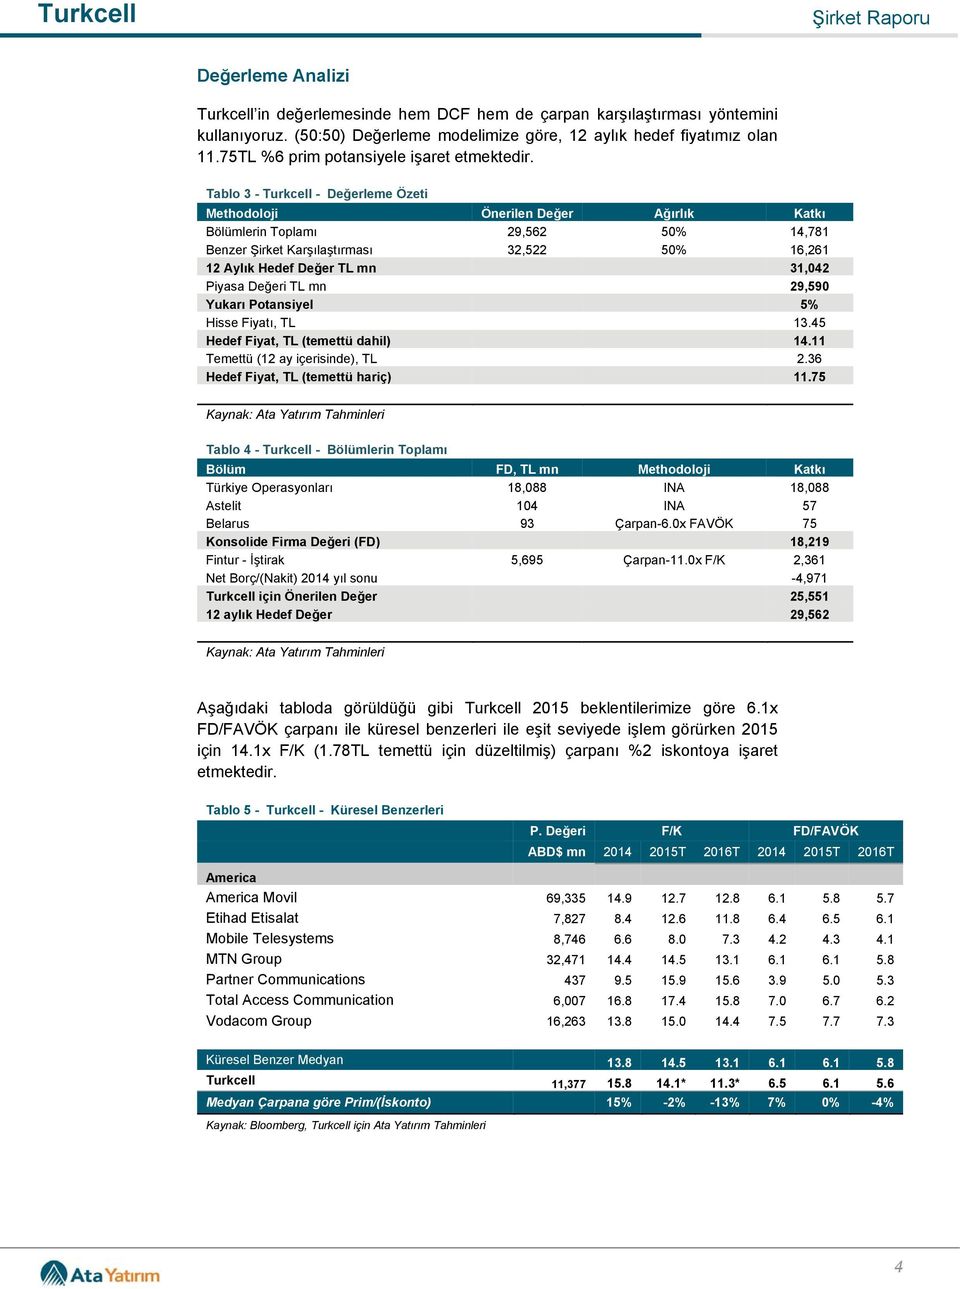 Tablo 3 - Turkcell - Değerleme Özeti Methodoloji Önerilen Değer Ağırlık Katkı Bölümlerin Toplamı 29,562 50% 14,781 Benzer Şirket Karşılaştırması 32,522 50% 16,261 12 Aylık Hedef Değer TL mn 31,042